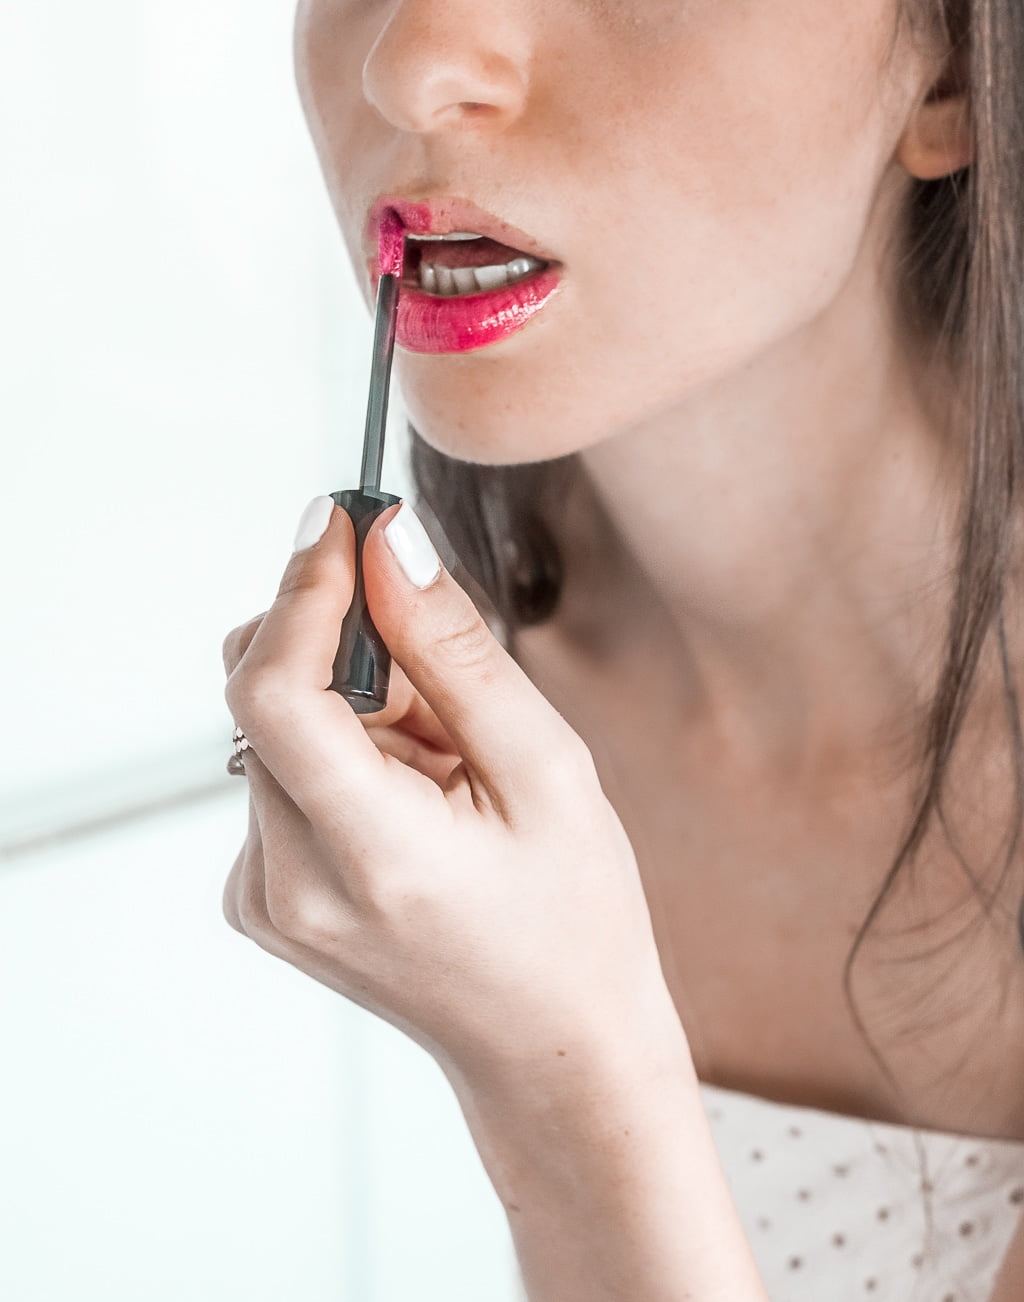 Gucci Bloom Acqua di Fiori | Elizabeth Arden / Skin Illuminating Brightening Night Capsules | Giorgio Armani / Ecstasy Lacquer Liquid Lipstick | Beauty products review